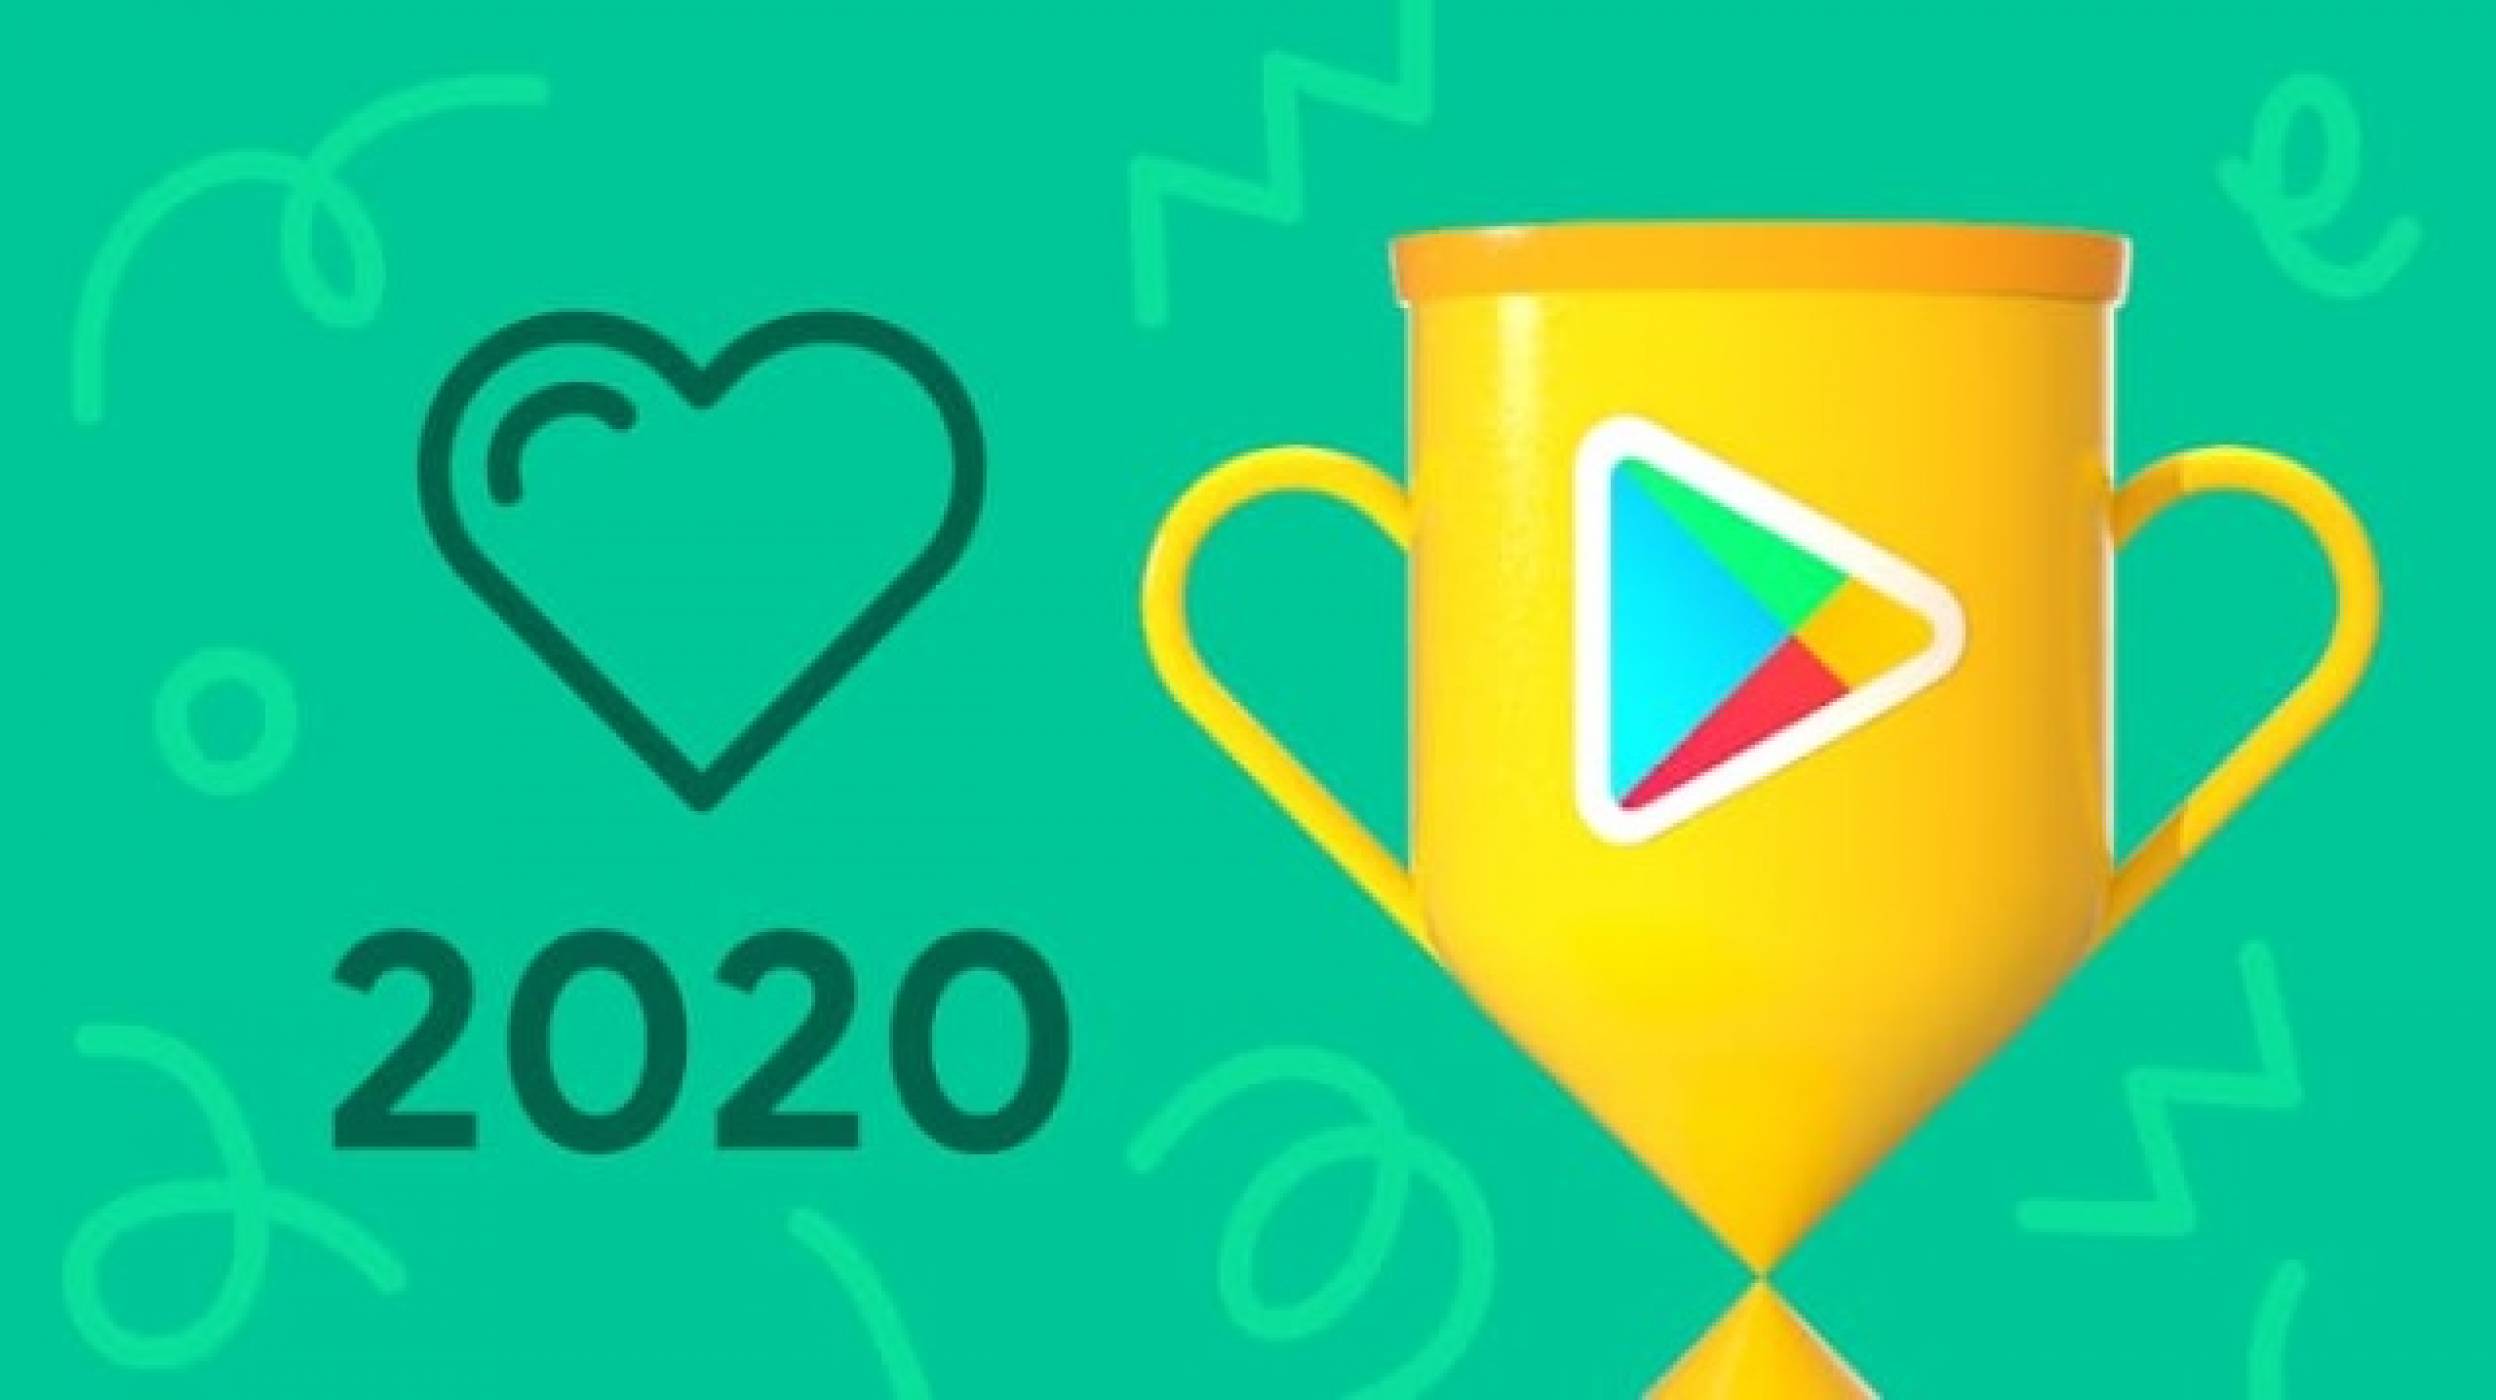 Disney+ е най-доброто приложение на 2020 г. според потребителите в Google Play